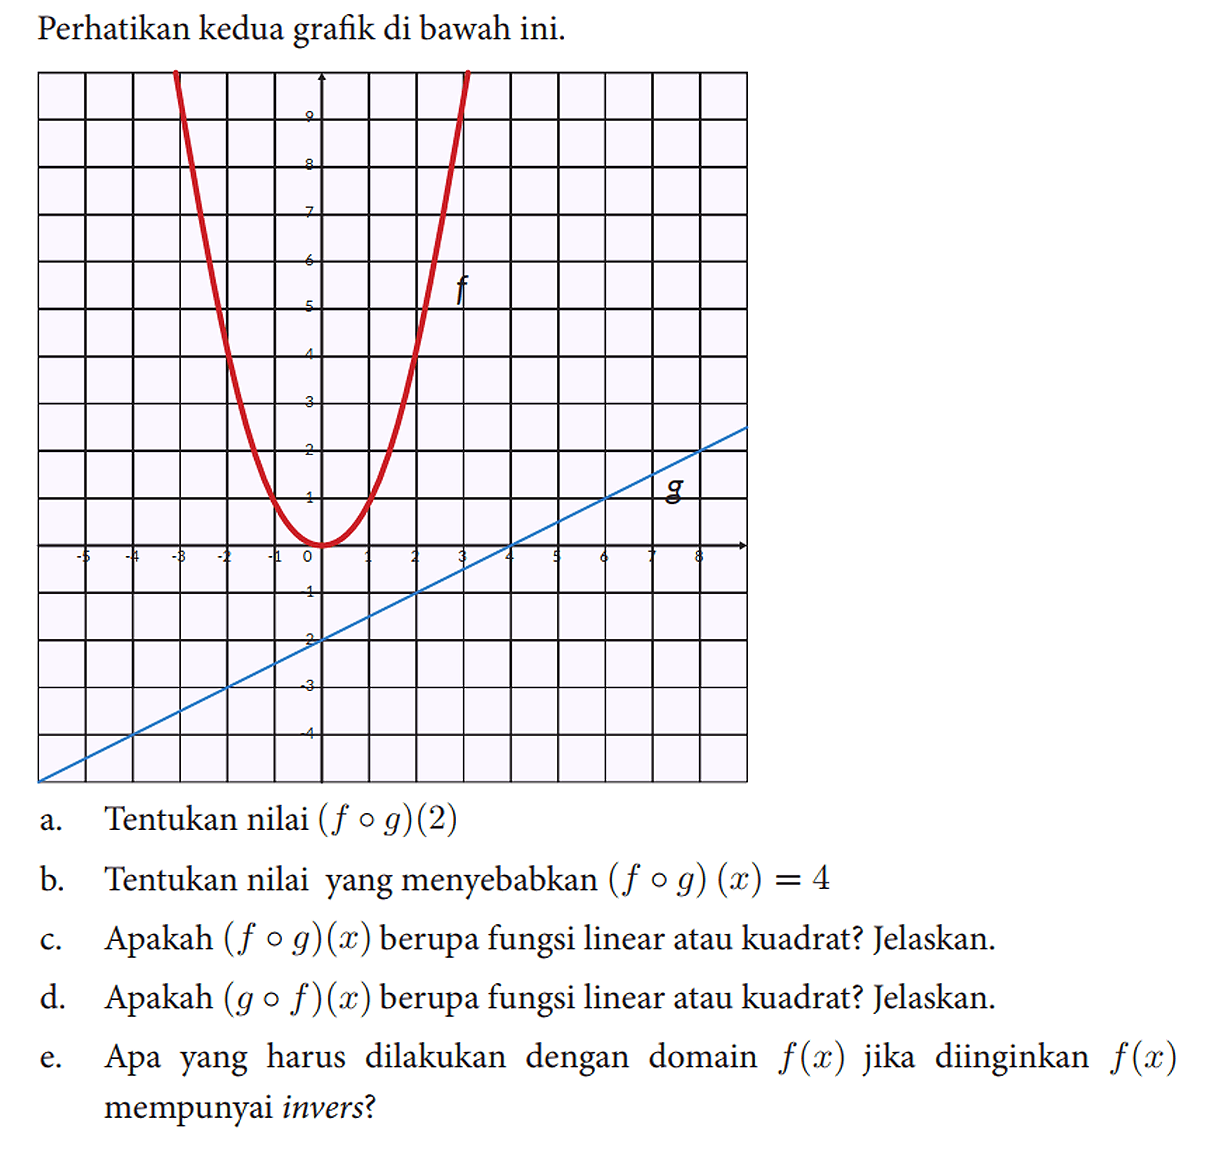 Perhatikan kedua grafik di bawah ini.
 a. Tentukan nilai (f o g)(2) 
 b. Tentukan nilai yang menyebabkan (f o g)(x)=4 
 c. Apakah (f o g)(x) berupa fungsi linear atau kuadrat? Jelaskan.
 d. Apakah (g o f)(x) berupa fungsi linear atau kuadrat? Jelaskan.
 e. Apa yang harus dilakukan dengan domain f(x) jika diinginkan f(x) mempunyai invers?